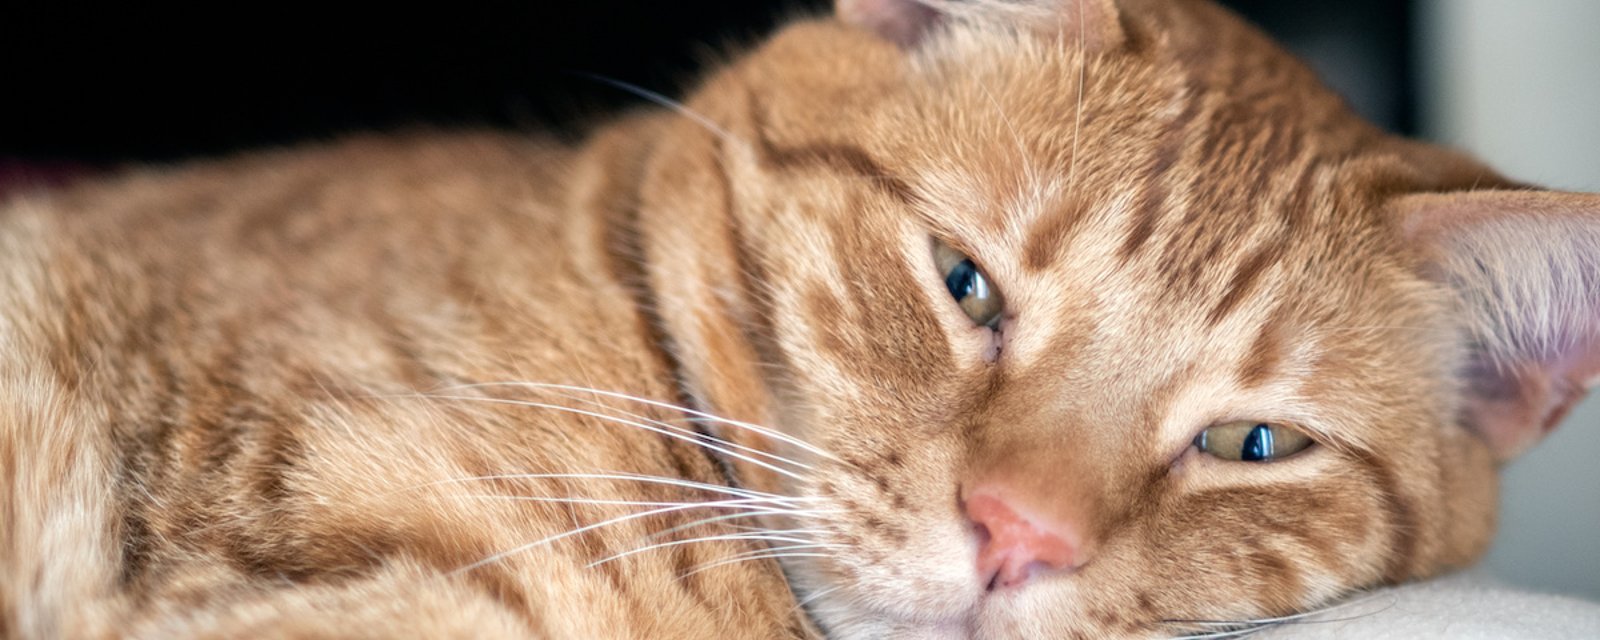 Si votre chat cligne lentement des yeux en vous regardant, c’est une bonne nouvelle!